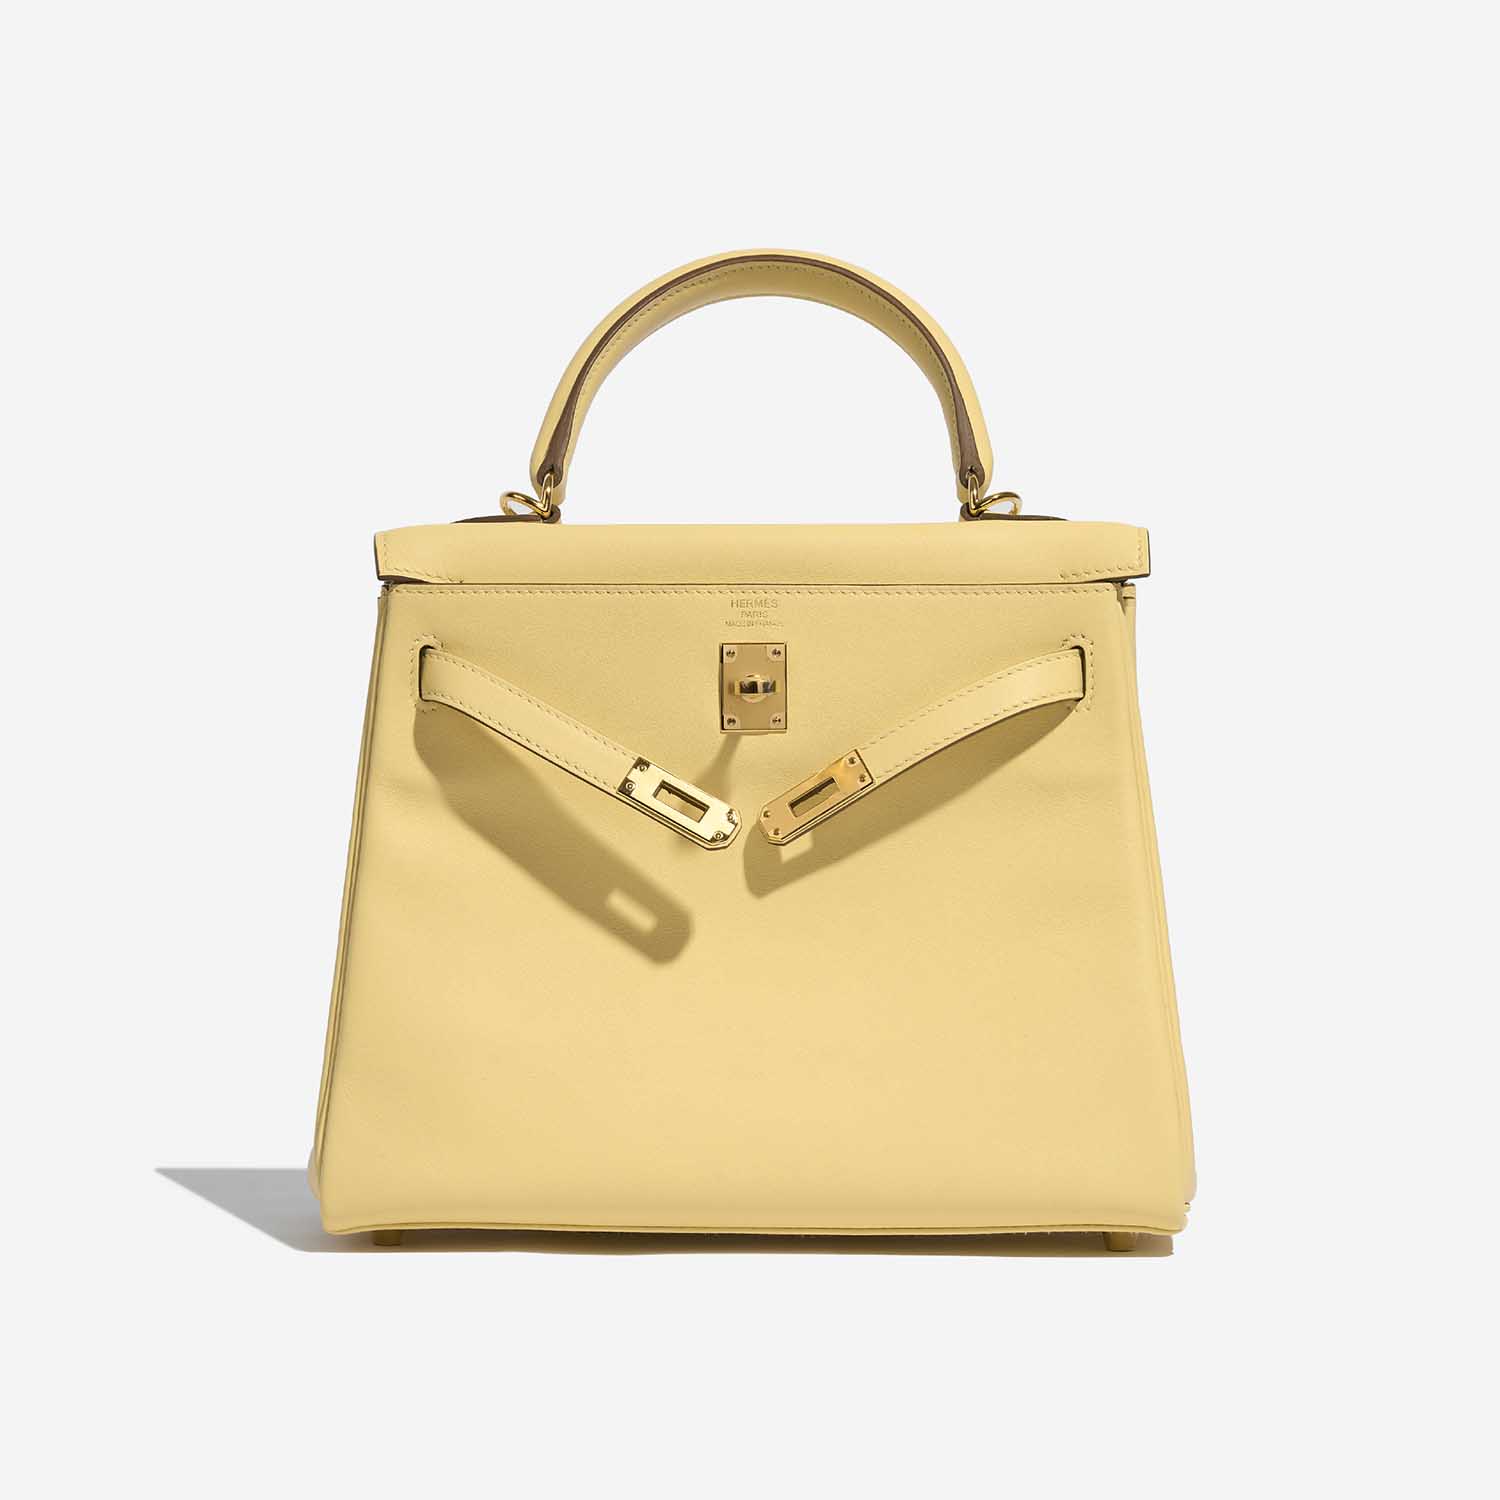 Sac Hermès d'occasion Kelly 25 Swift Jaune Poussin Yellow Front Open | Vendez votre sac de créateur sur Saclab.com